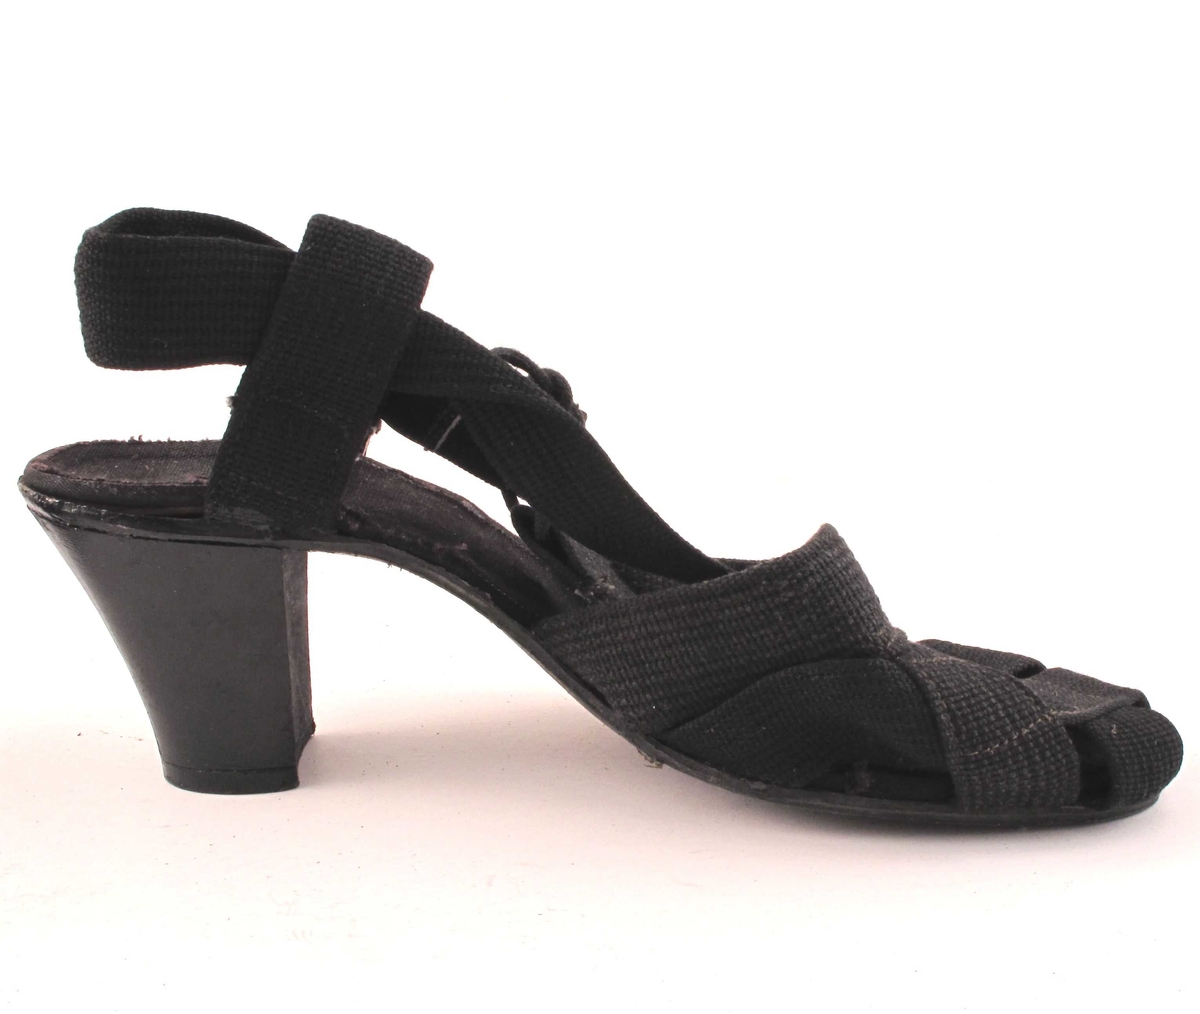 Et par høyhælte sorte damesko i tekstil.  Importerte.  Lukter svært sterkt av organsk lim, ukjent type.

Skoene har trehæler, men sålene er bygd opp av tekstil over lær eller hard gummi.  Såle stiftet fast under hælen.

Størrelse 4

"Overlæret" er laget av flettde og sammensydde sorte bånd, som fortsetter ut i lengre bånd rundt hælen.  Haælbåndet er festet til sålen med stropper på begge sider av hælen.  Lisseknyting på utsiden av vristen.